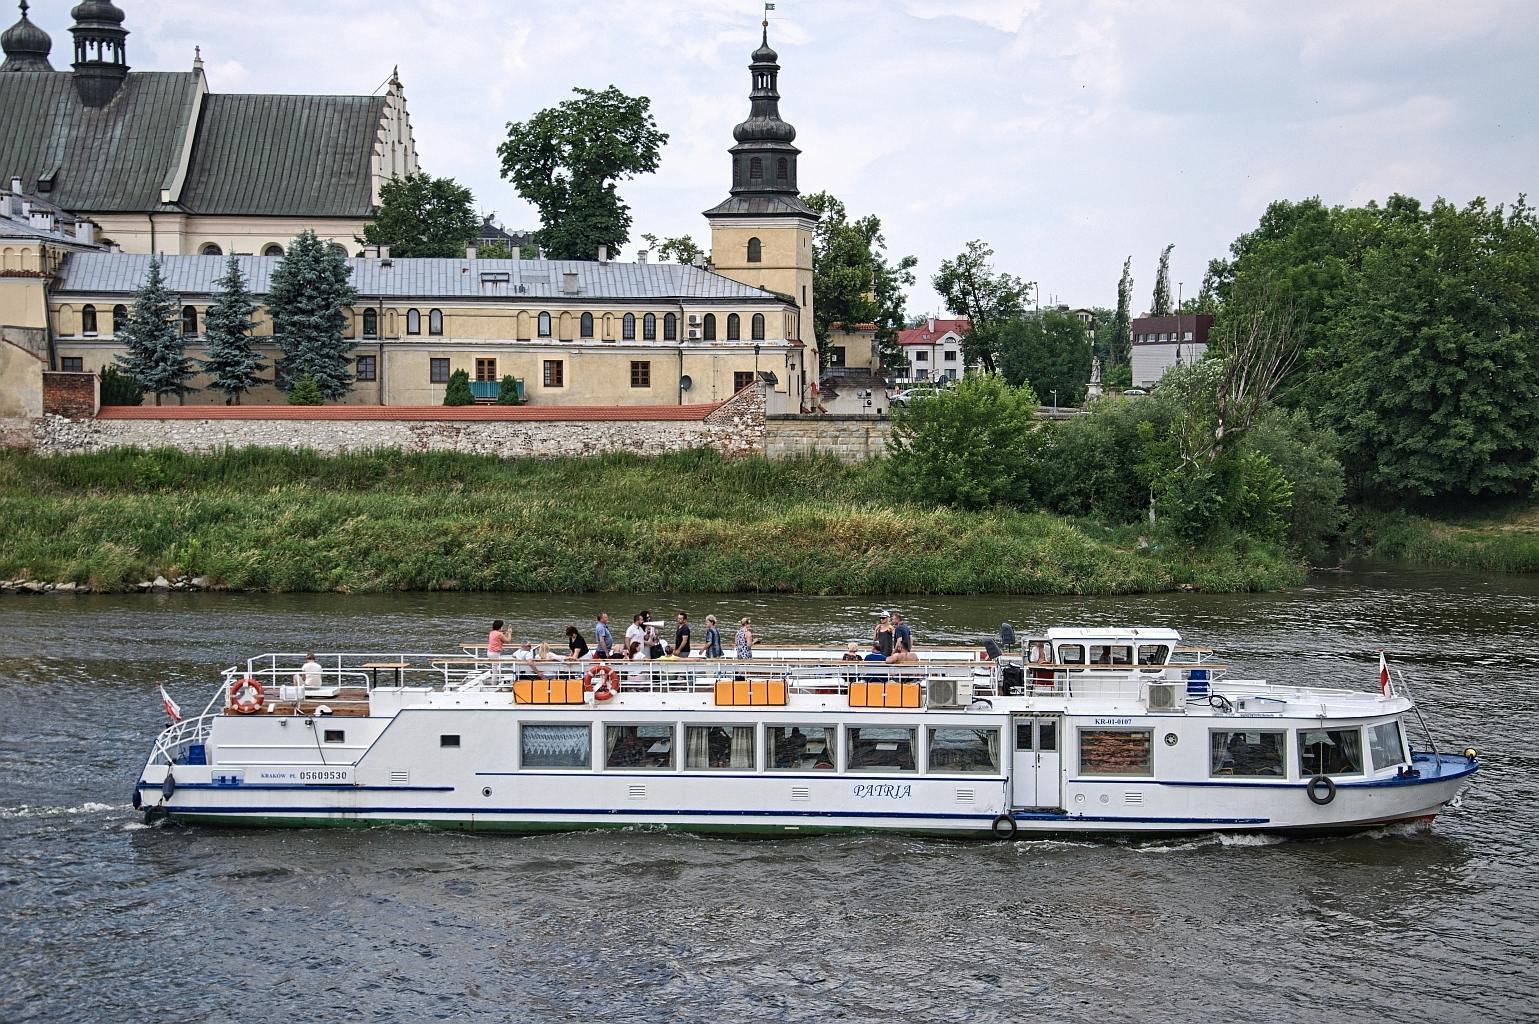 Cruzeiro de 1 hora no rio Vístula em Cracóvia com guia de áudio